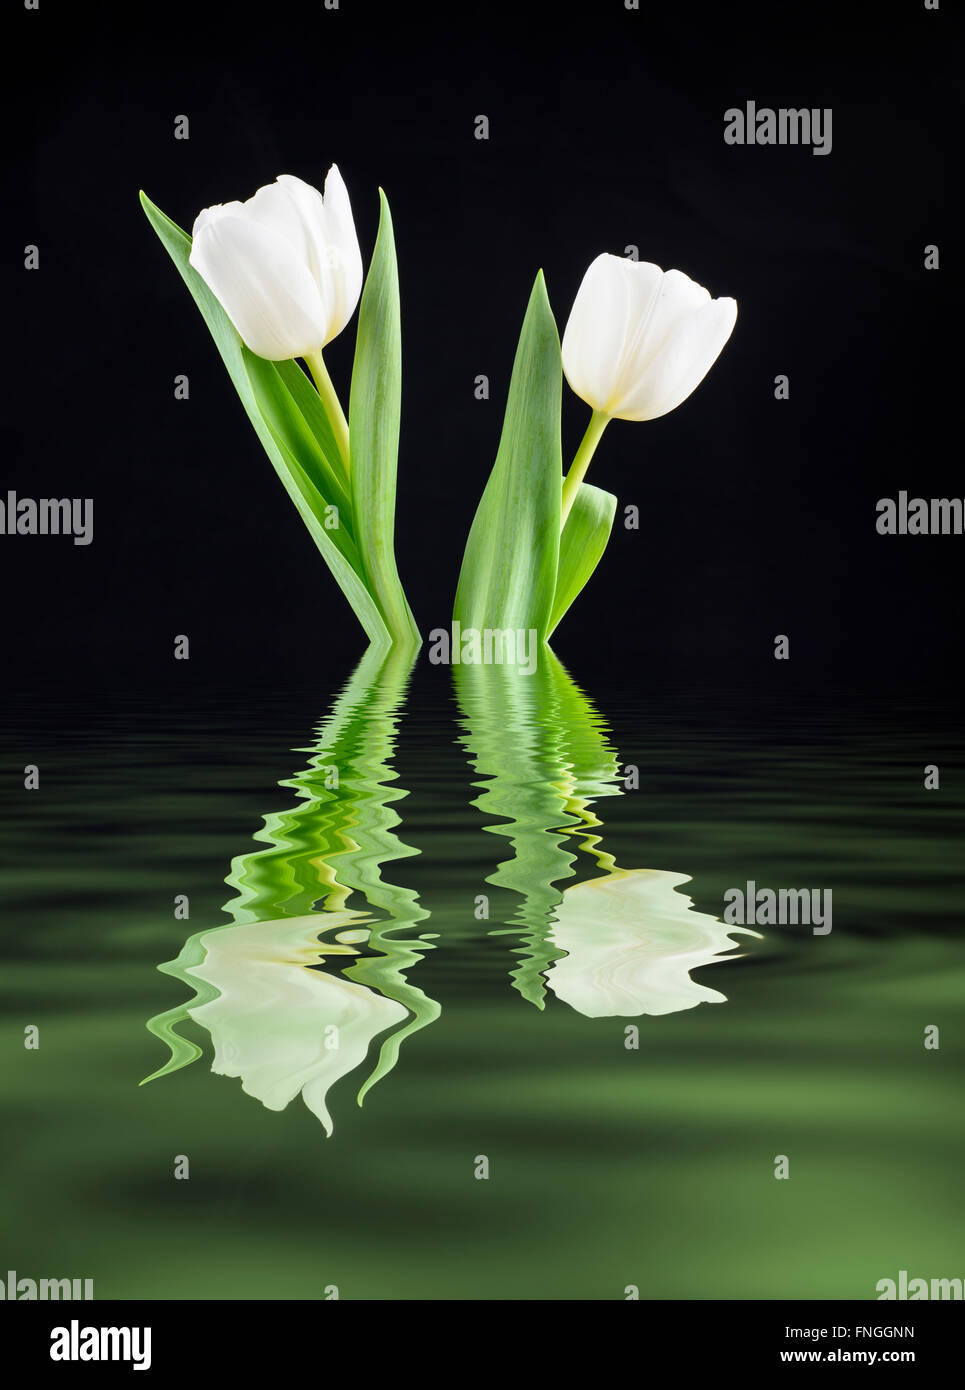 Digital manipulierte Bild von ein paar weiße Tulpen in einer Lache des Wassers reflektiert Stockfoto